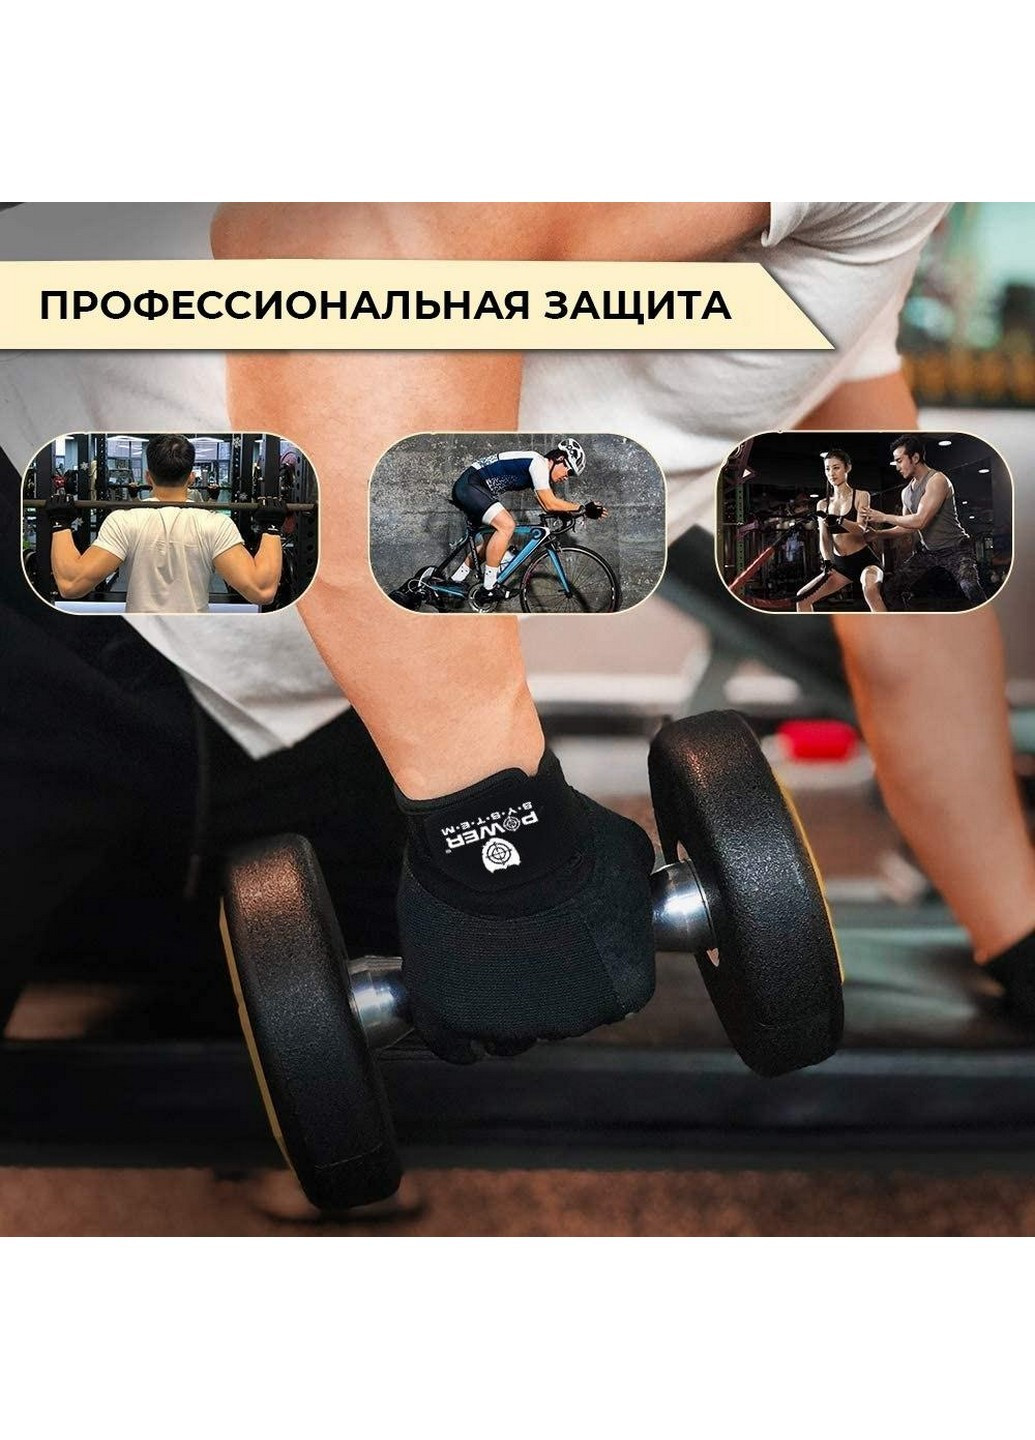 Перчатки для фитнеса и тяжелой атлетики XS Power System (232677942)